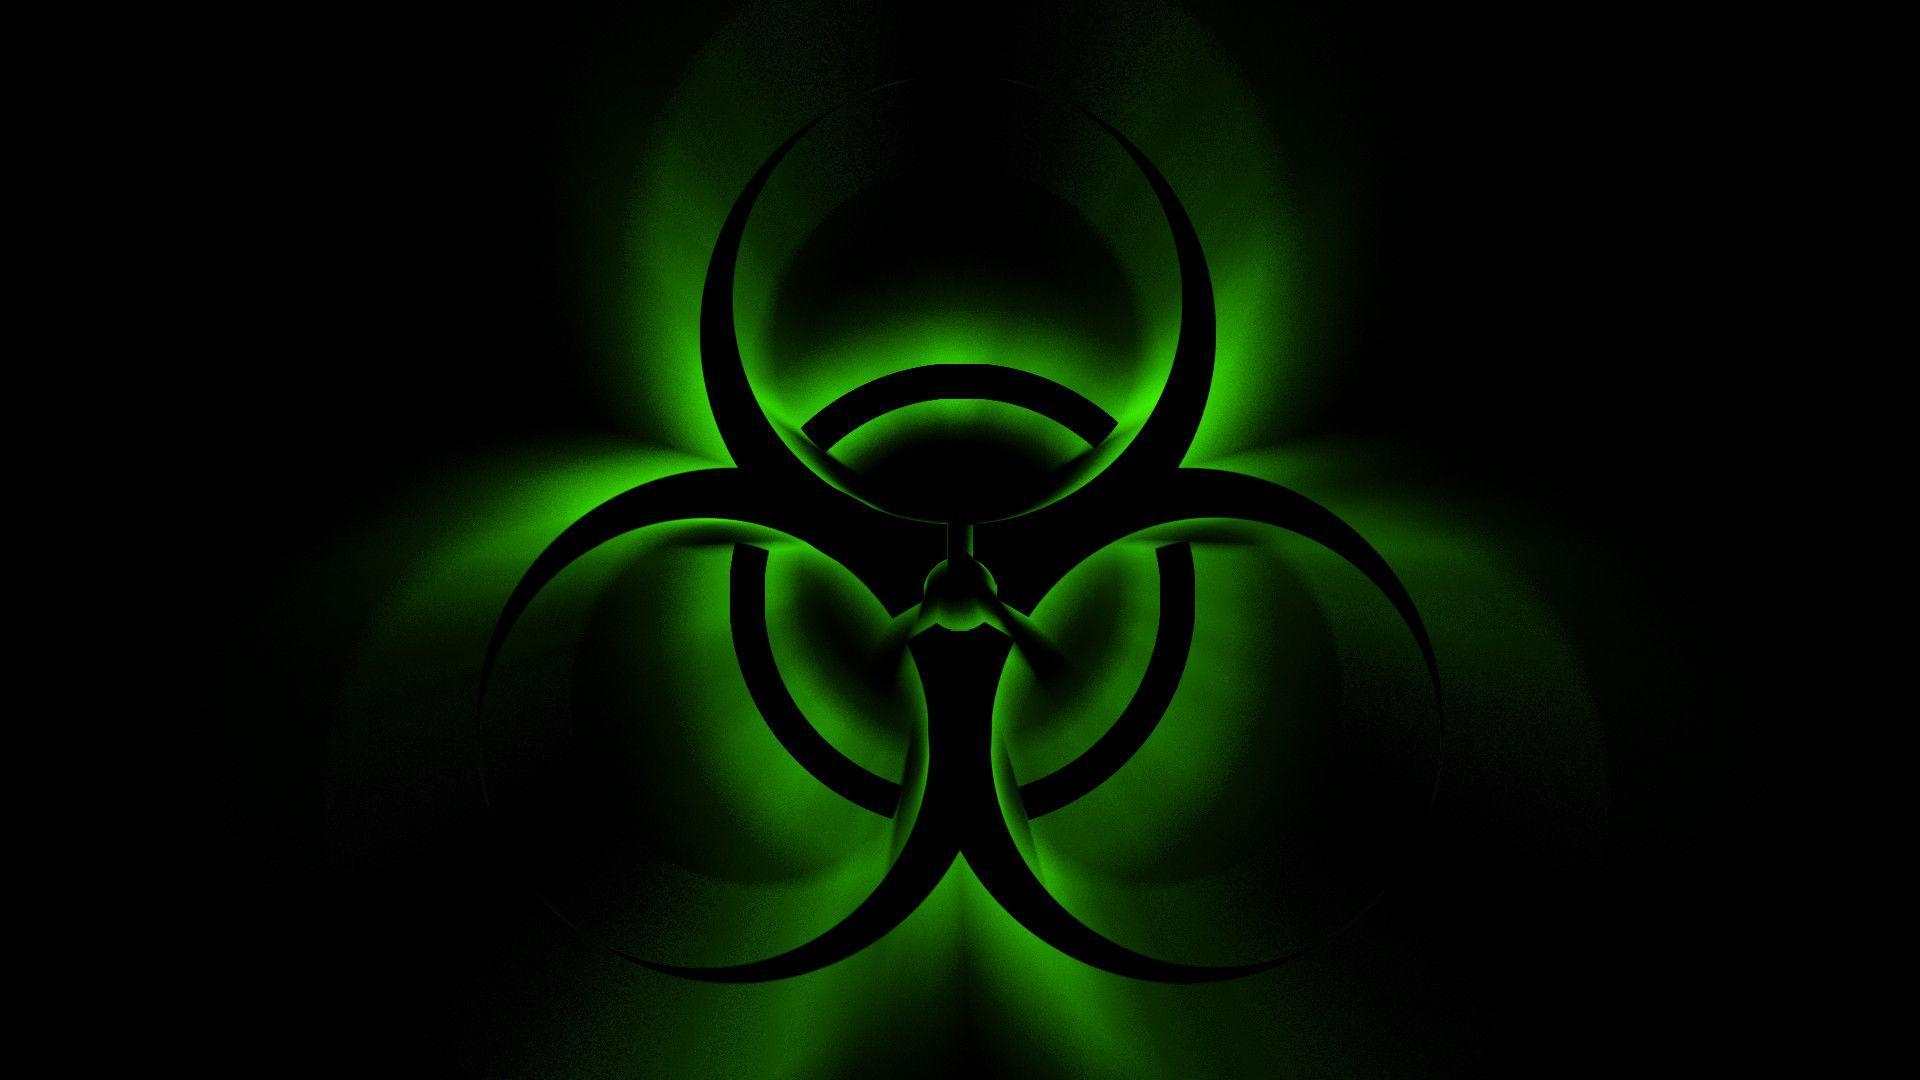 Biohazard Background. Biohazard tattoo, iPhone